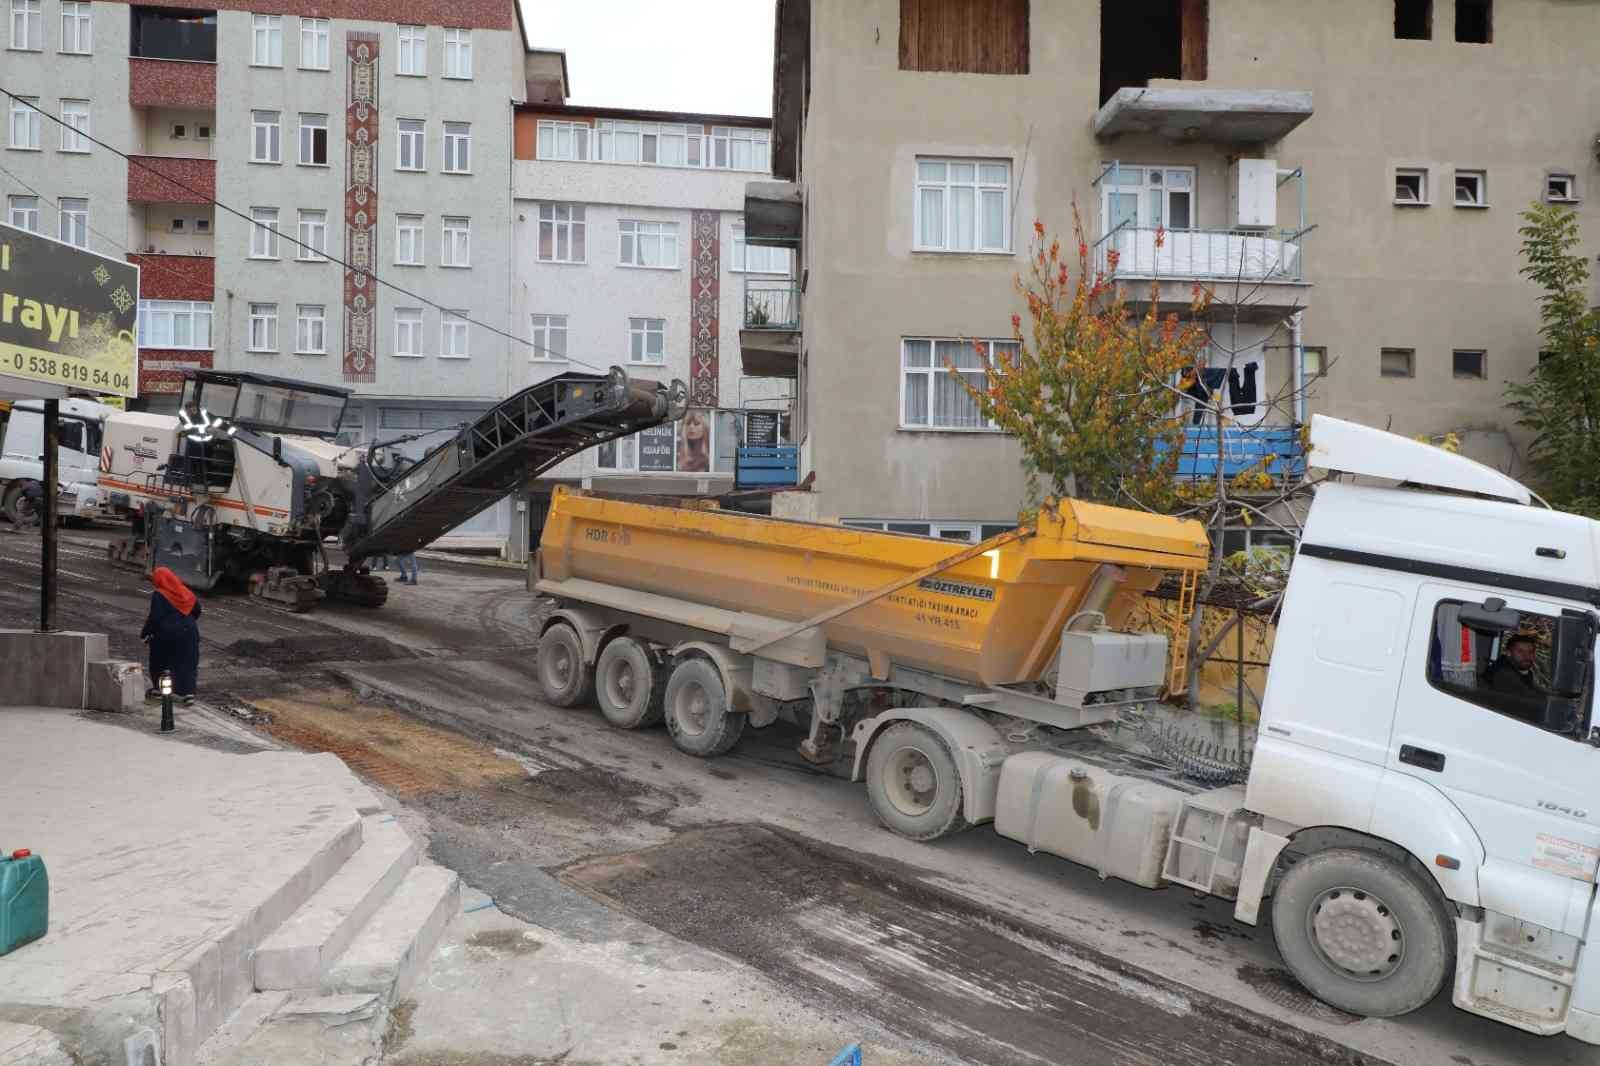 Dilovası’nda asfalt çalışmaları devam ediyor #kocaeli